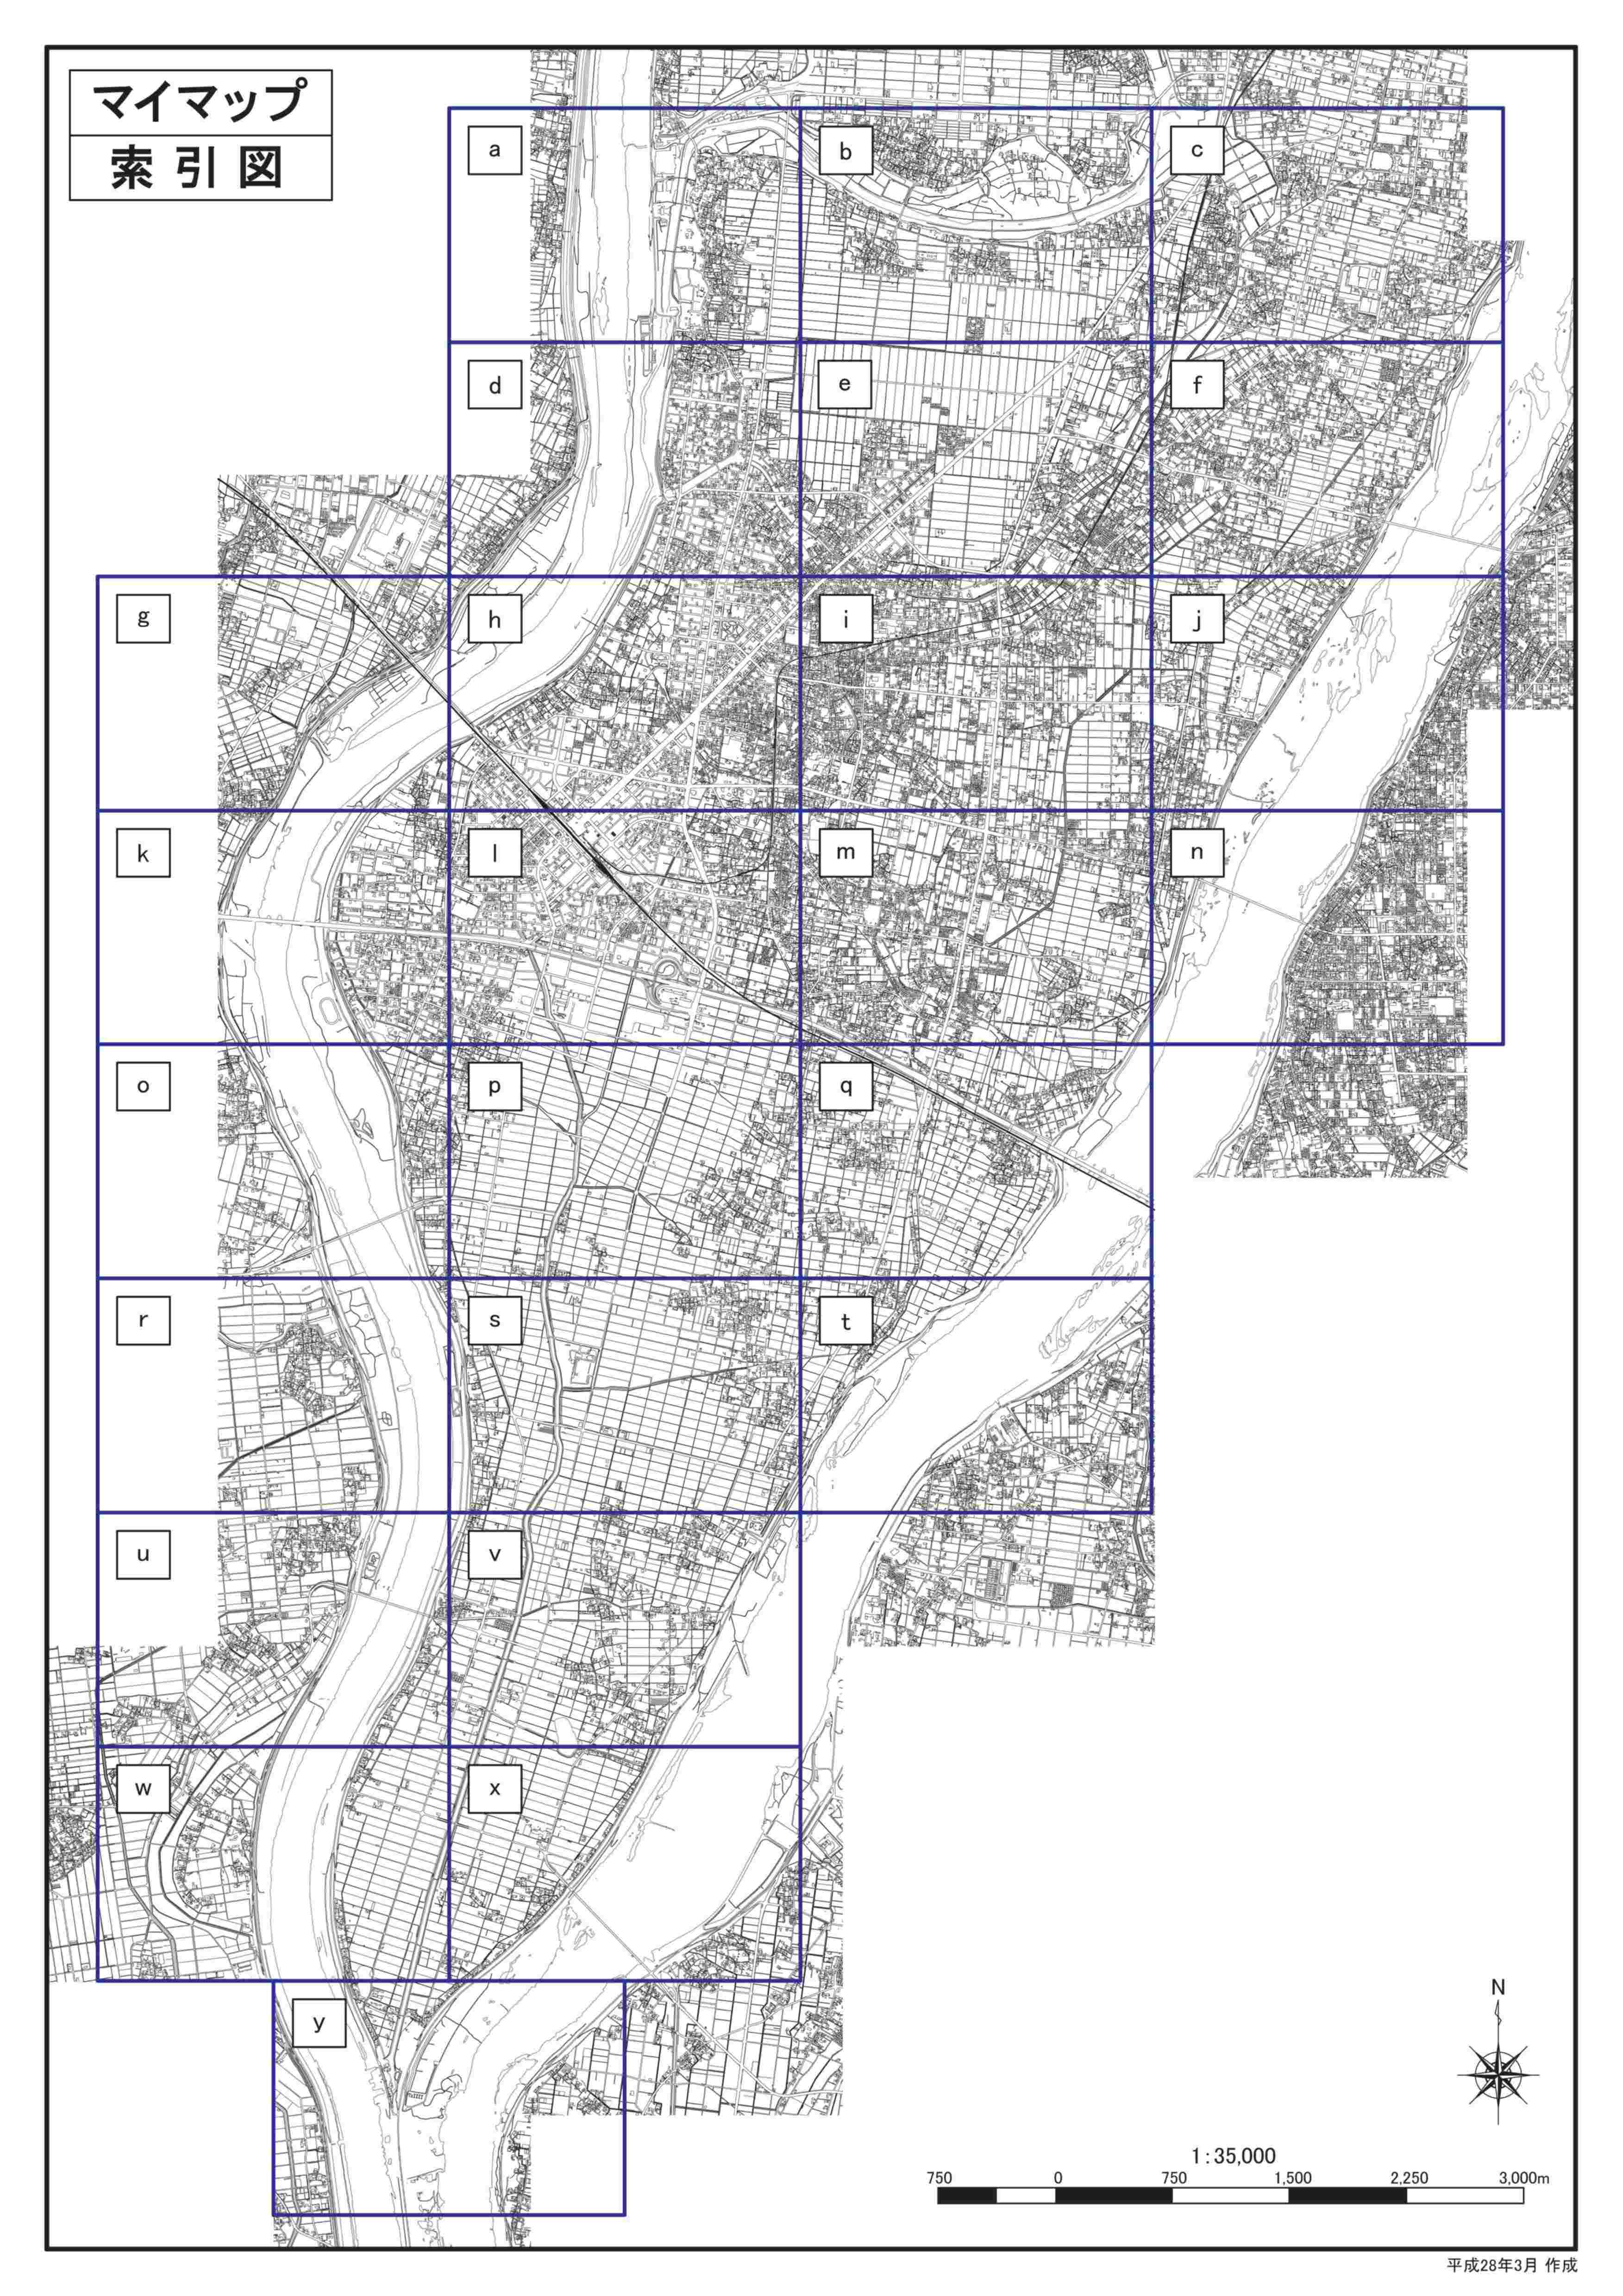 木曽川洪水ハザードマップ想定最大規模版（詳細図）の画像